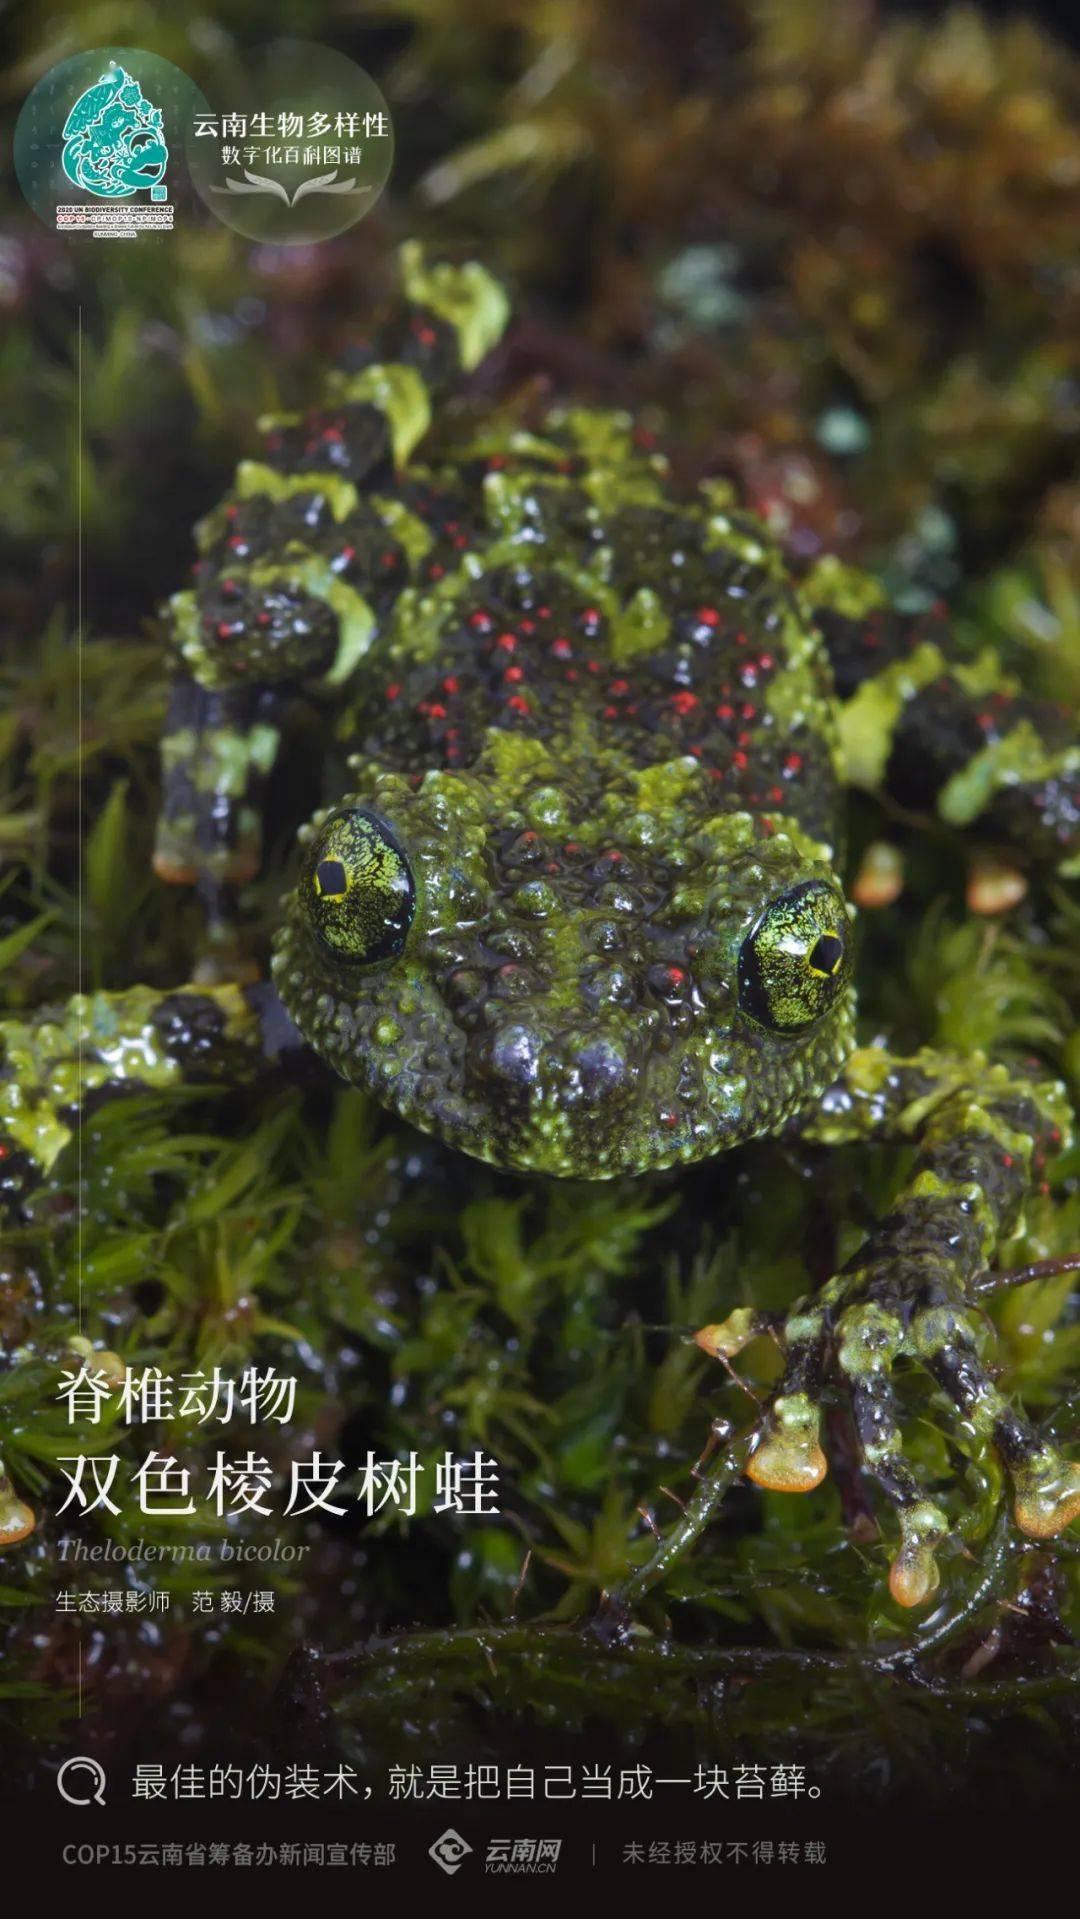 【云南生物多样性数字化百科图谱】脊椎动物·双色棱皮树蛙:最佳的